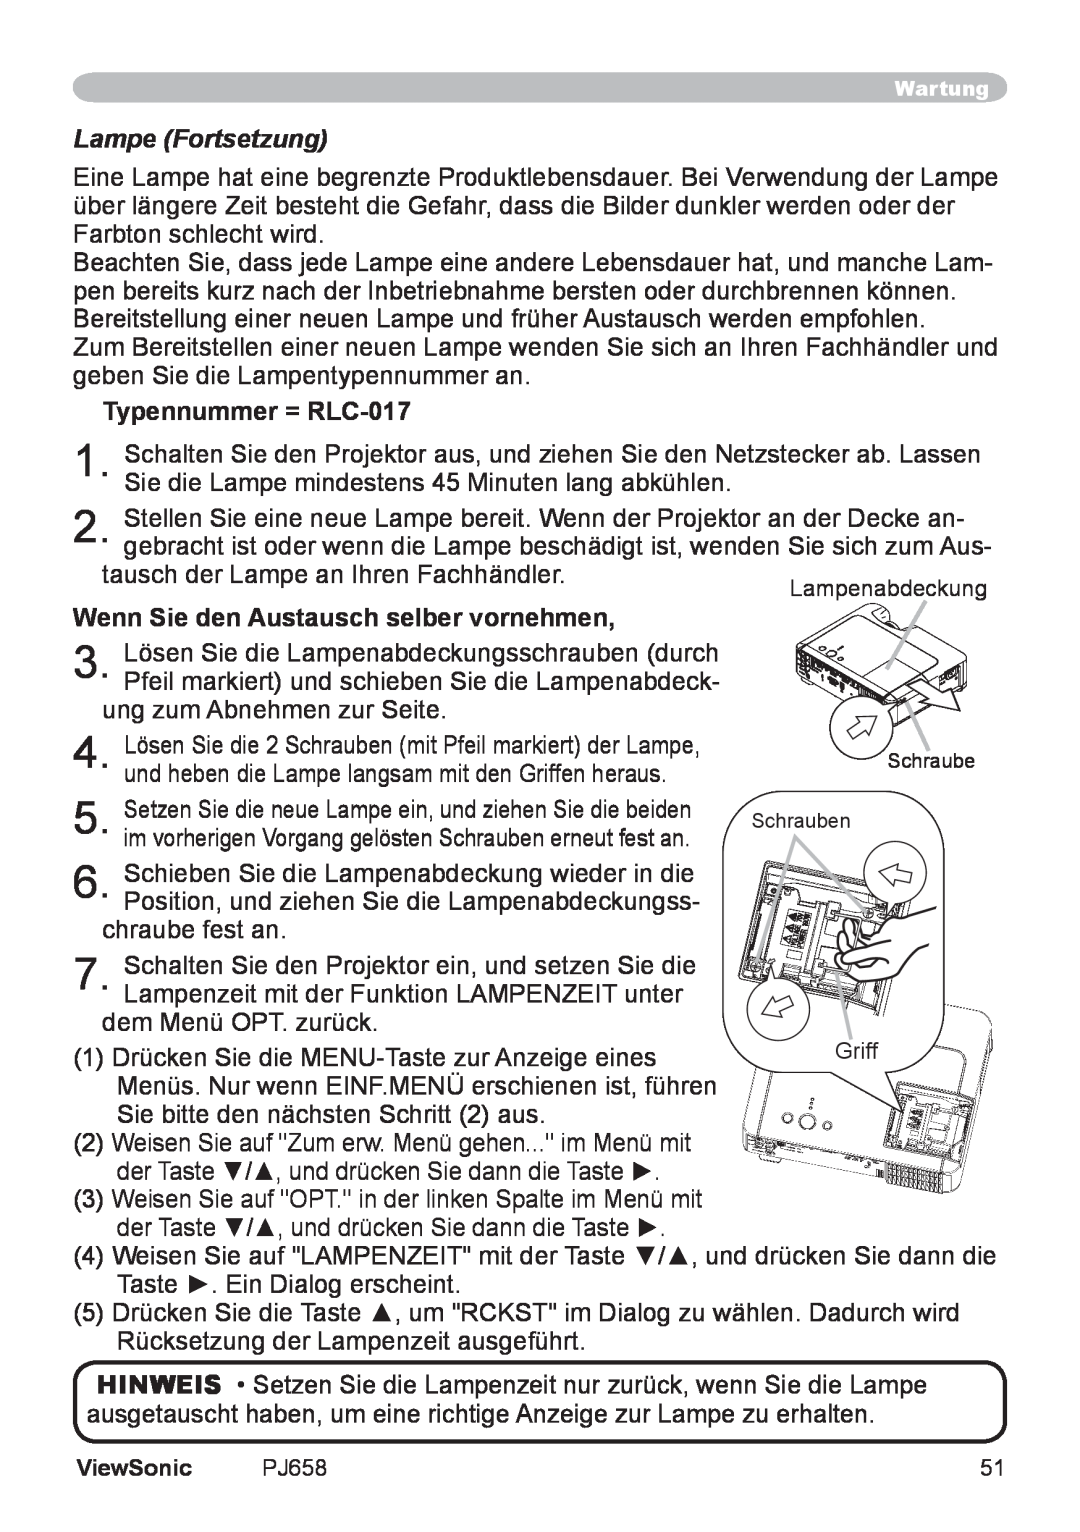 ViewSonic VS11361 manual Lampe Fortsetzung, Typennummer = RLC-017, Wenn Sie den Austausch selber vornehmen 